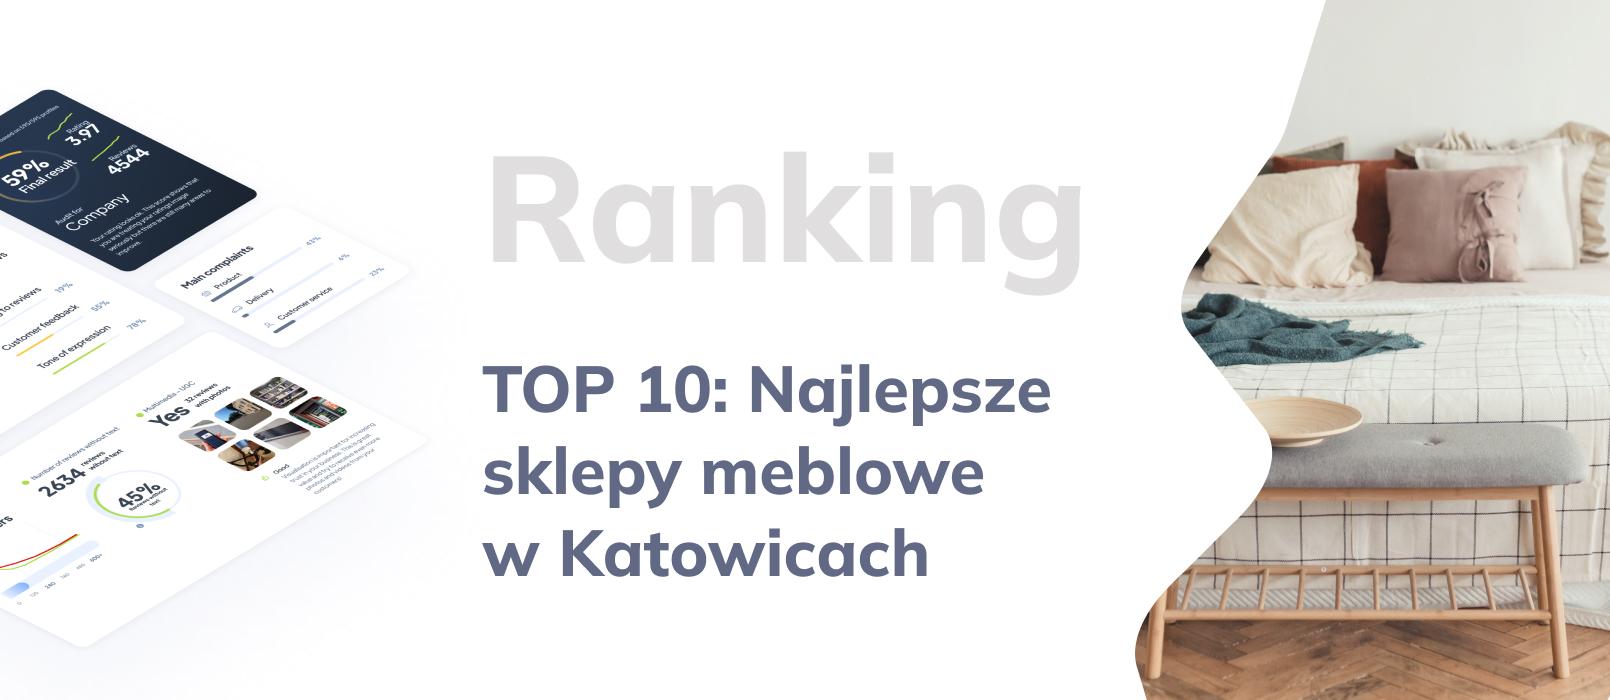 Najlepsze salony meblowe w Katowicach, czyli TOP 10 sklepów z meblami w Katowicach